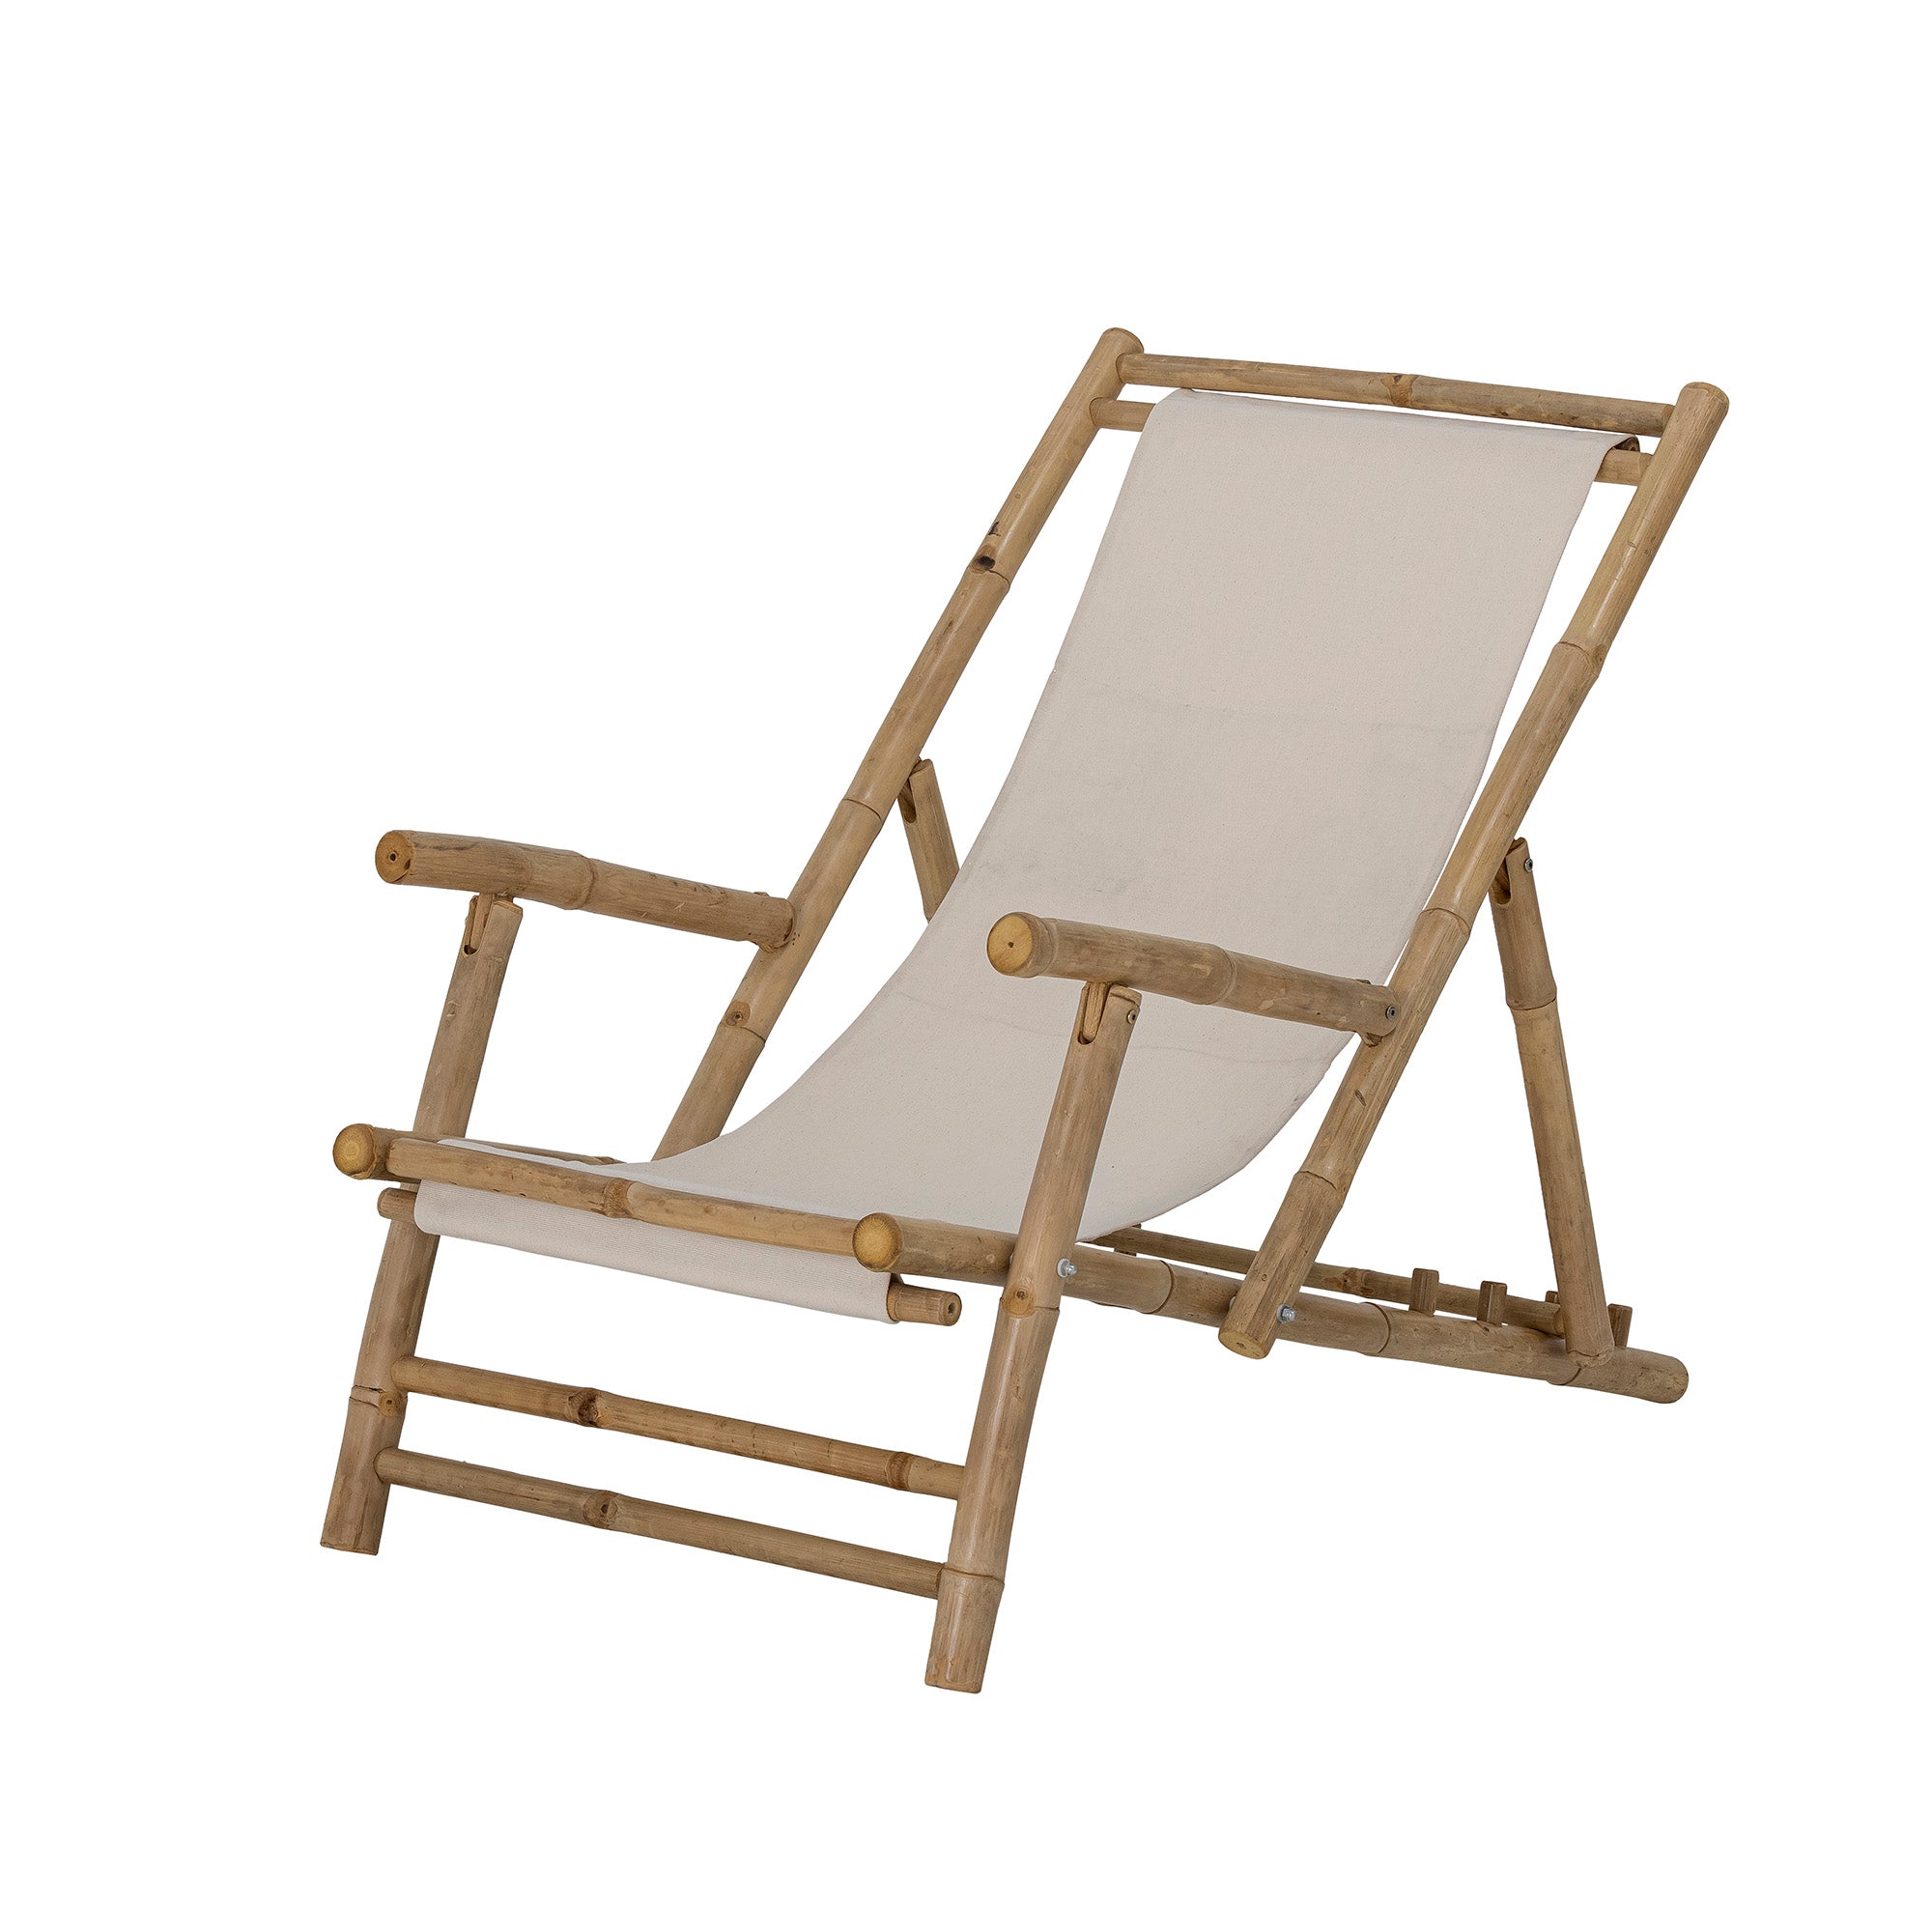 õuetool lamamistool toolid õuemööbel terrassimööbel bambusest tool naturaalne sunbed õuemööbel toolid lamamistoolid naturaalsest bambusest bamboo chair boho style